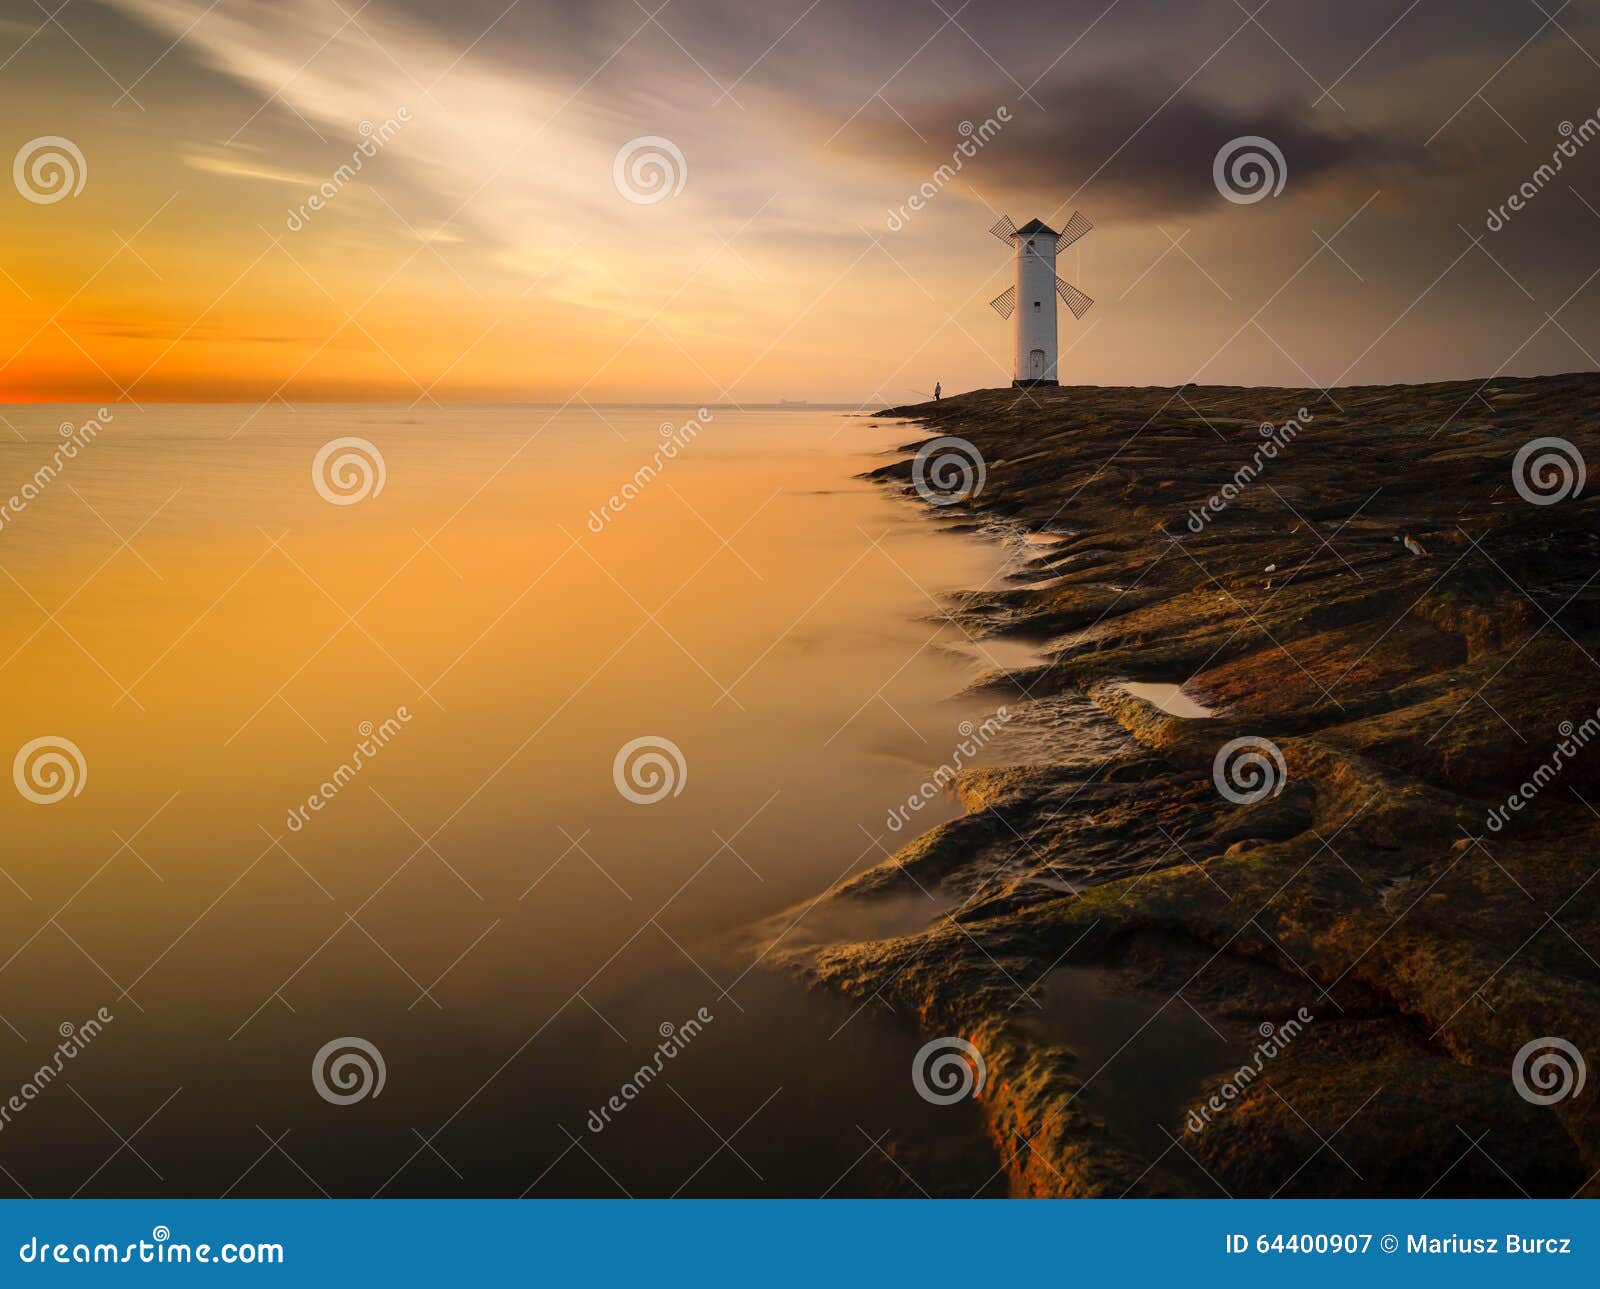 lighthouse in swinoujscie